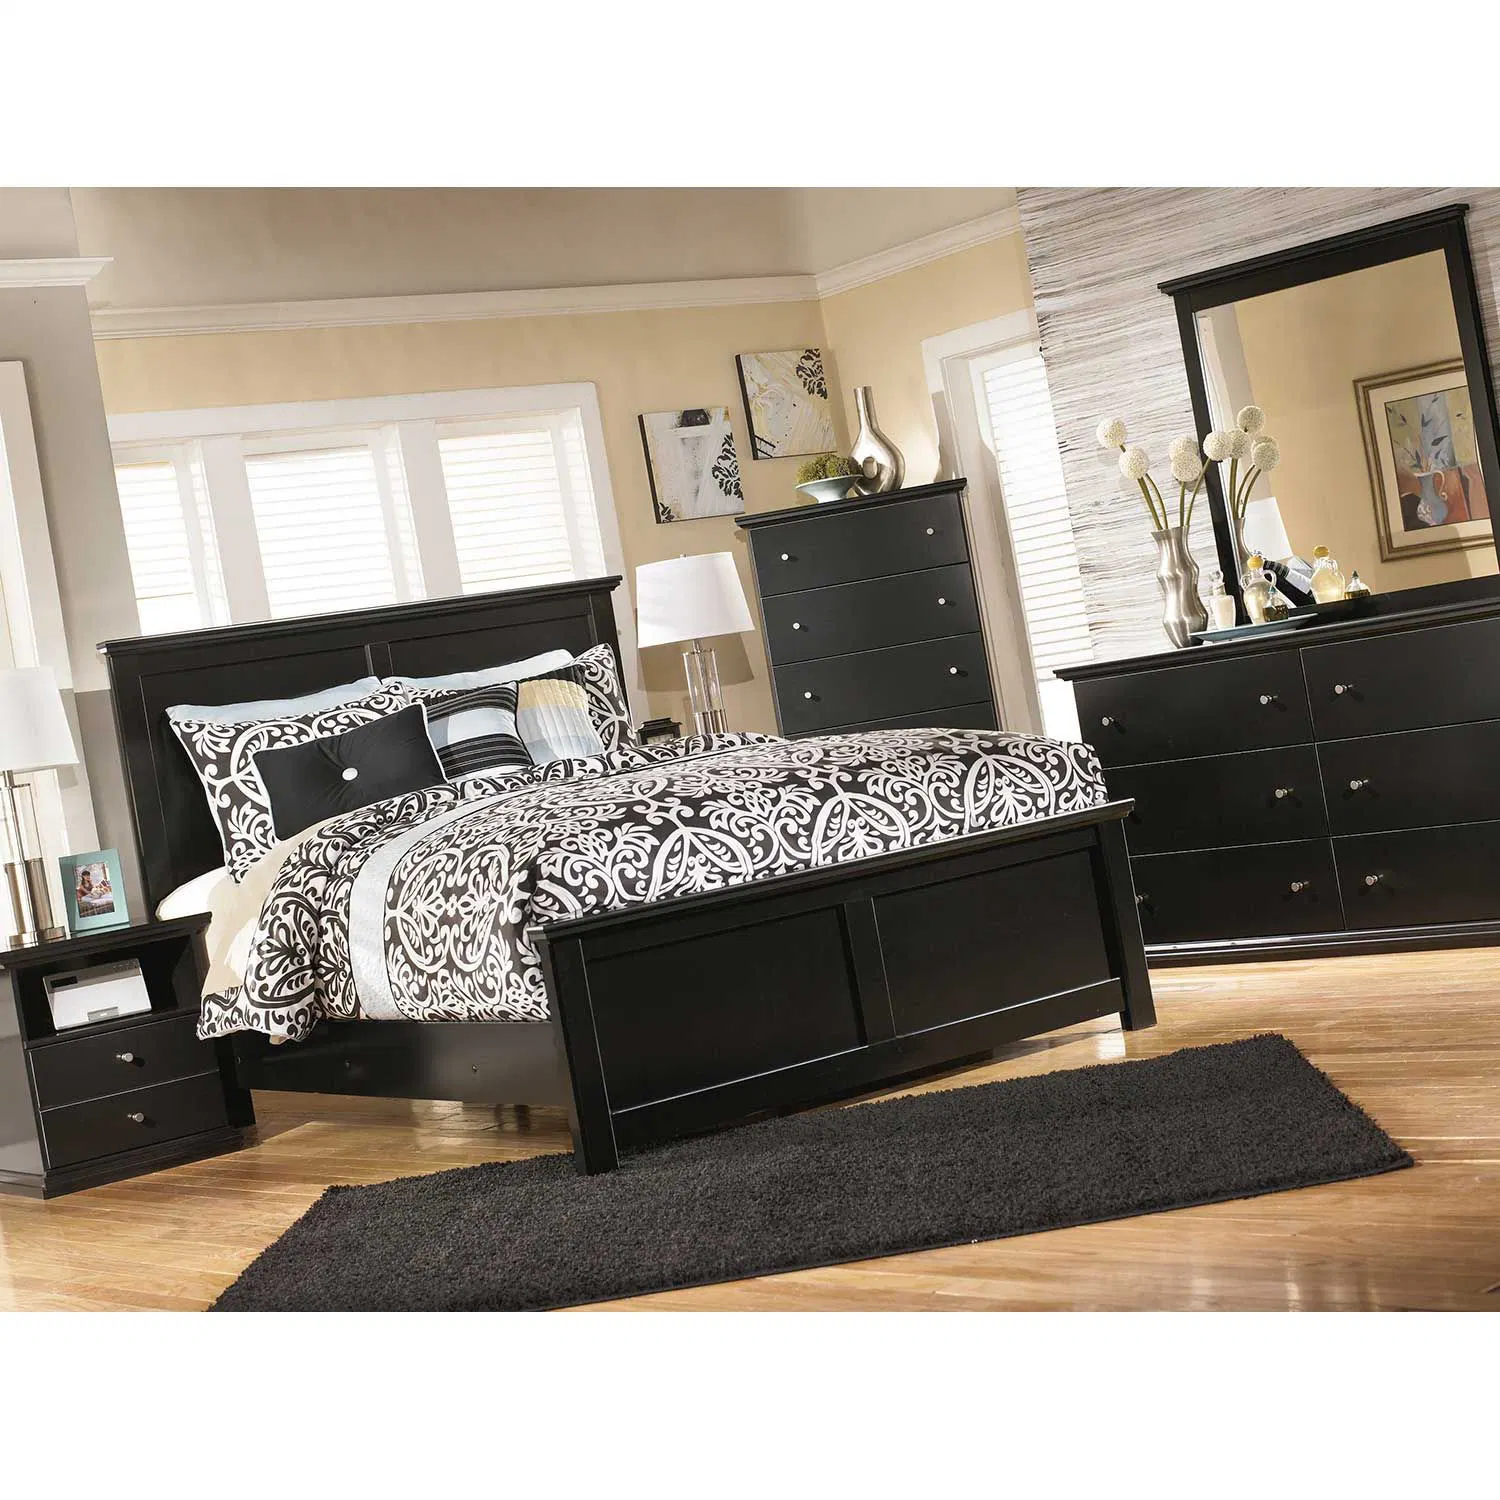 China pintado de negro al por mayor de 5 piezas de madera juego de dormitorio muebles incluyen Single Doble cama King Size que componen Vantity armario vestidor